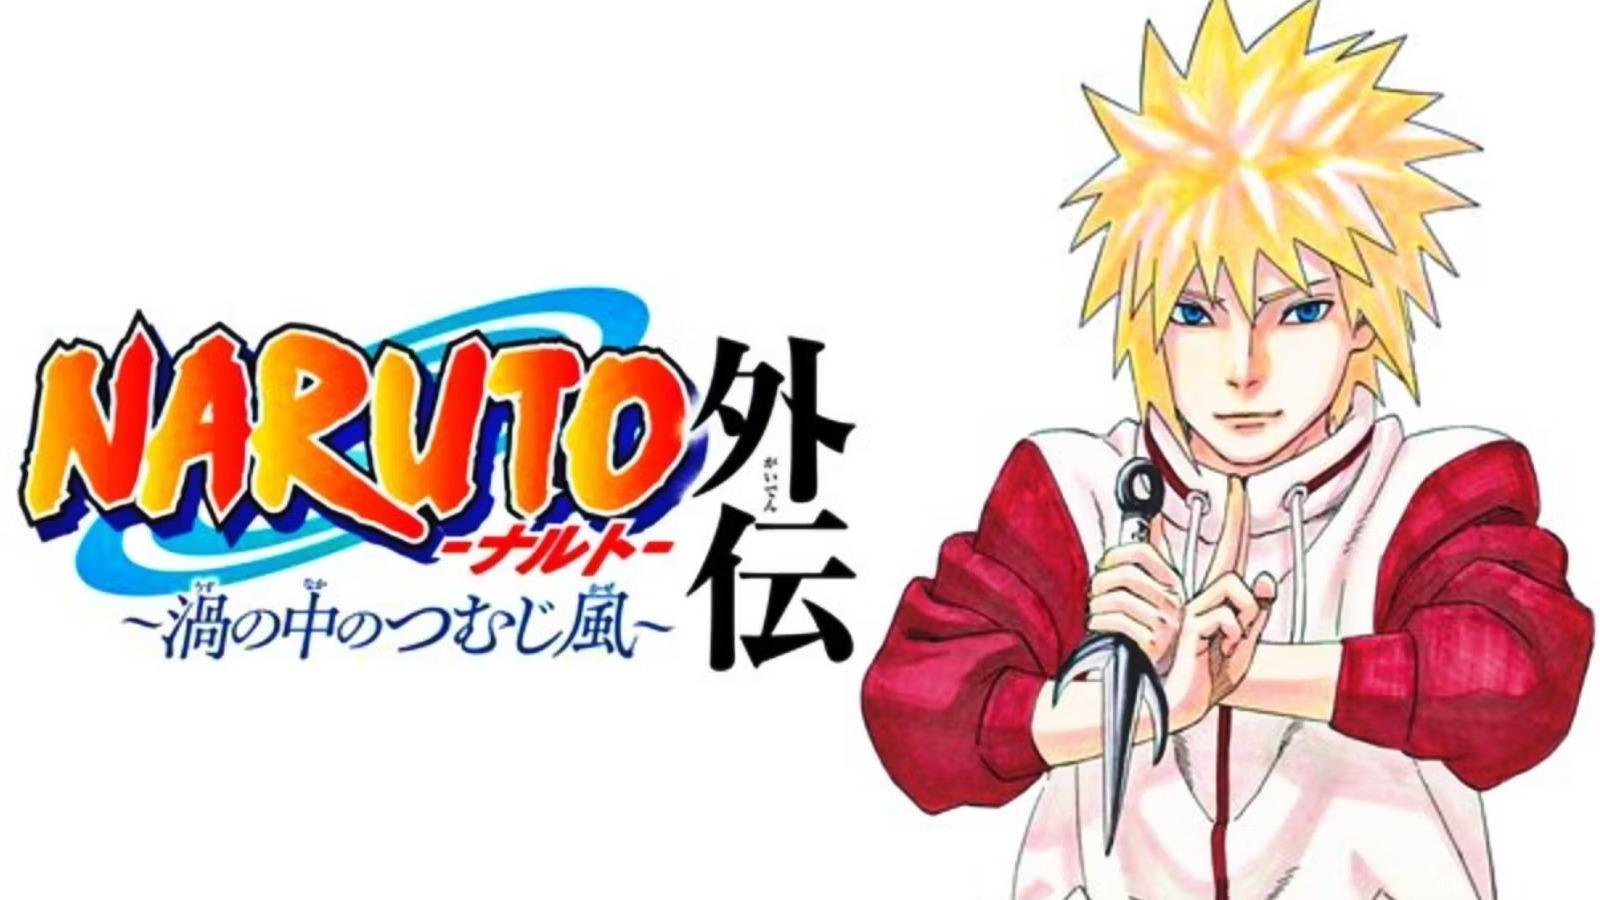 History of the 4th Hokage Naruto Anime, Minato. 